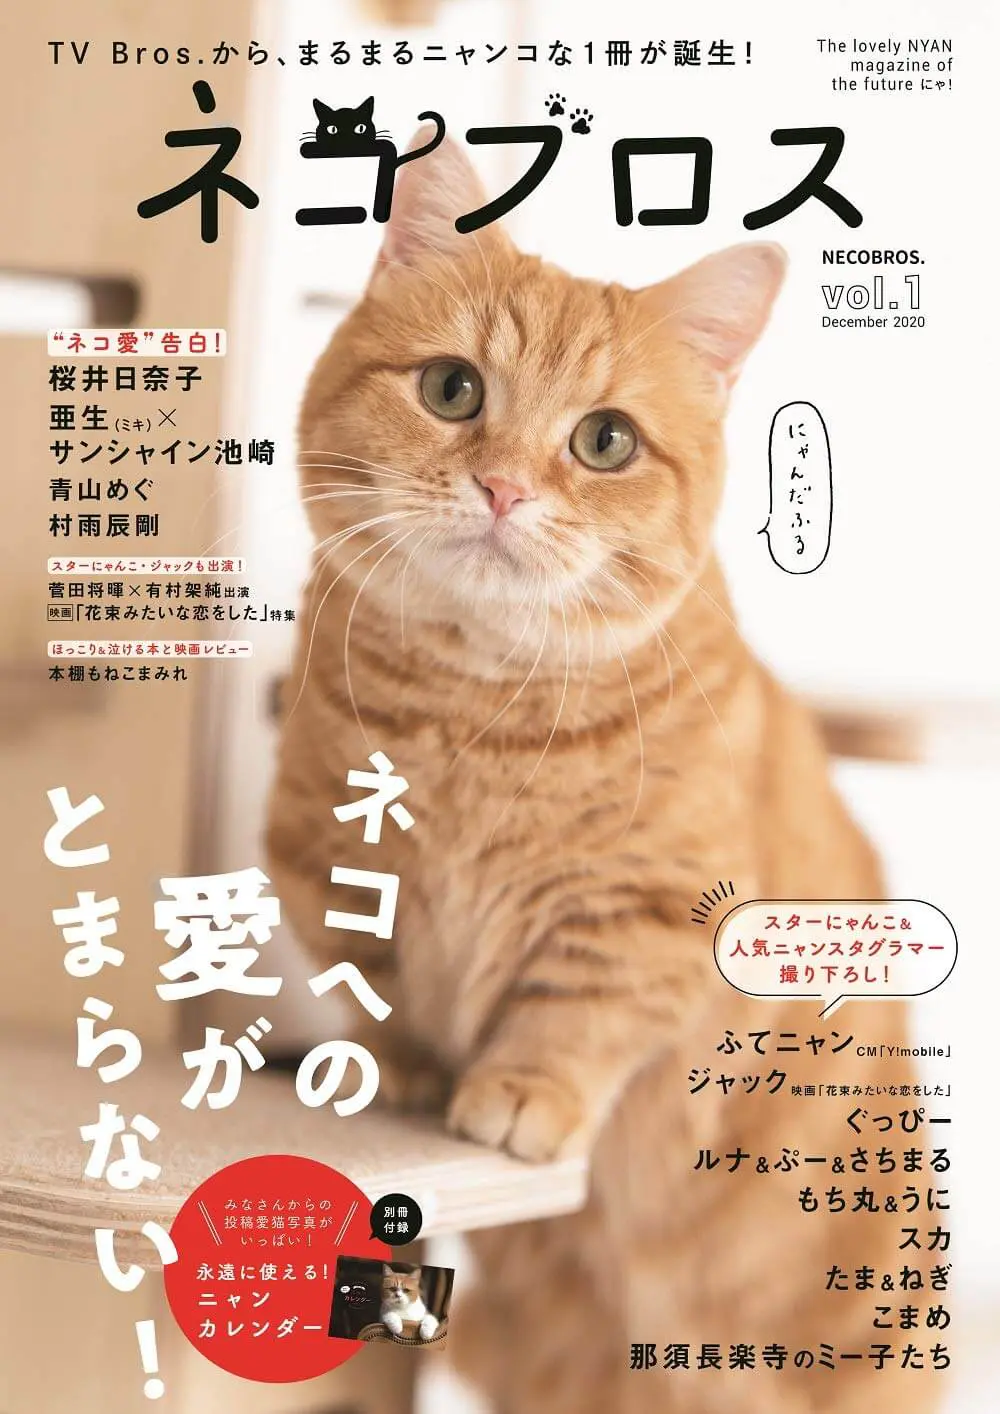 ふてニャン 桜井日奈子 サンシャイン池崎も登場 猫愛が詰まった雑誌 ネコブロス が爆誕 Cat Press キャットプレス